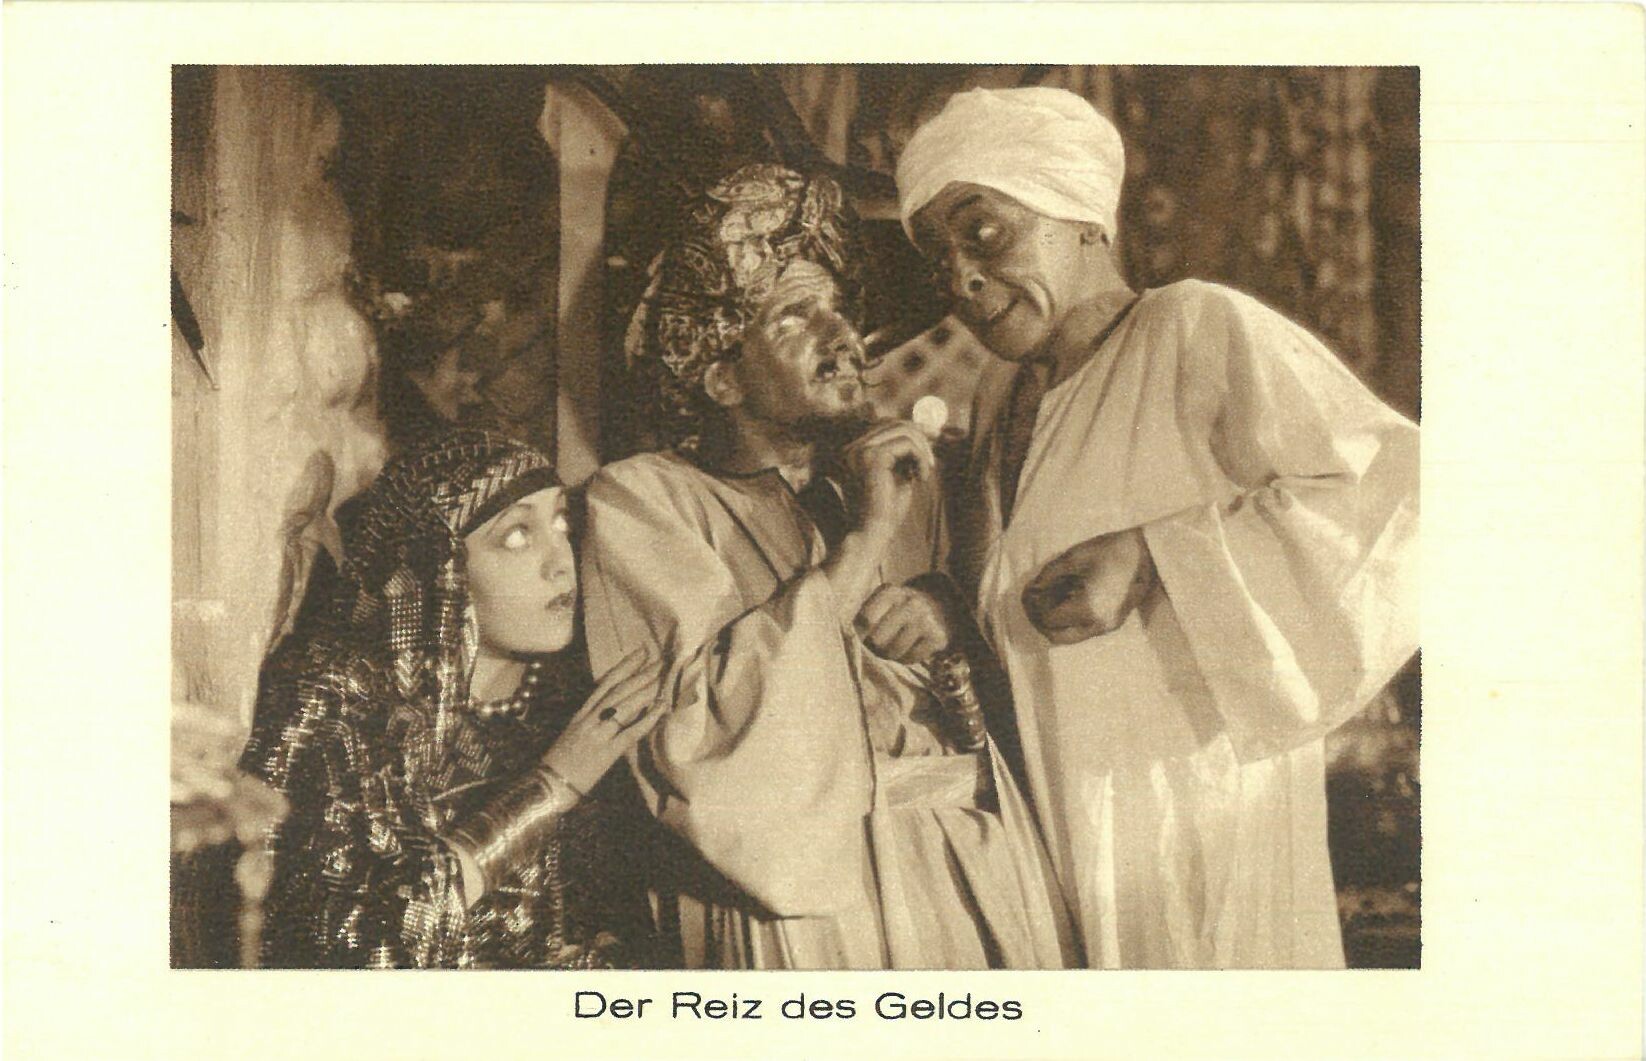 Syndikat-Film "Durch die Wüste", Serienbild Nr. 10 Der Reiz des Geldes (Karl-May-Museum gGmbH RR-R)